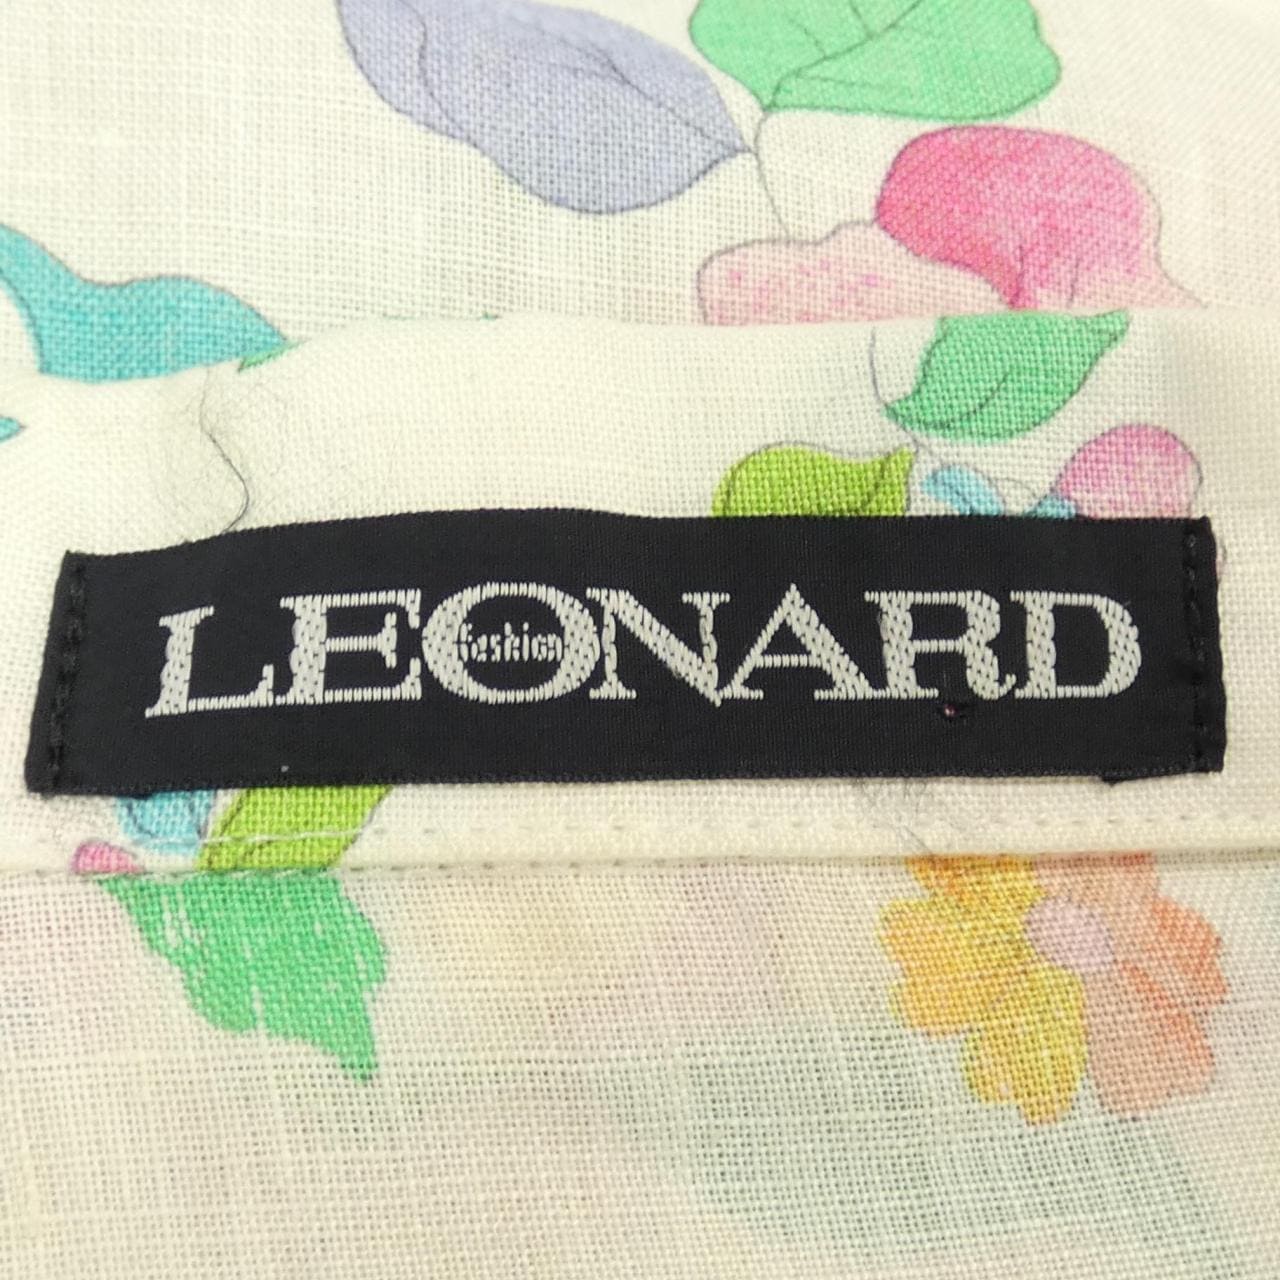 萊昂納多時尚LEONARD FASHION夾克